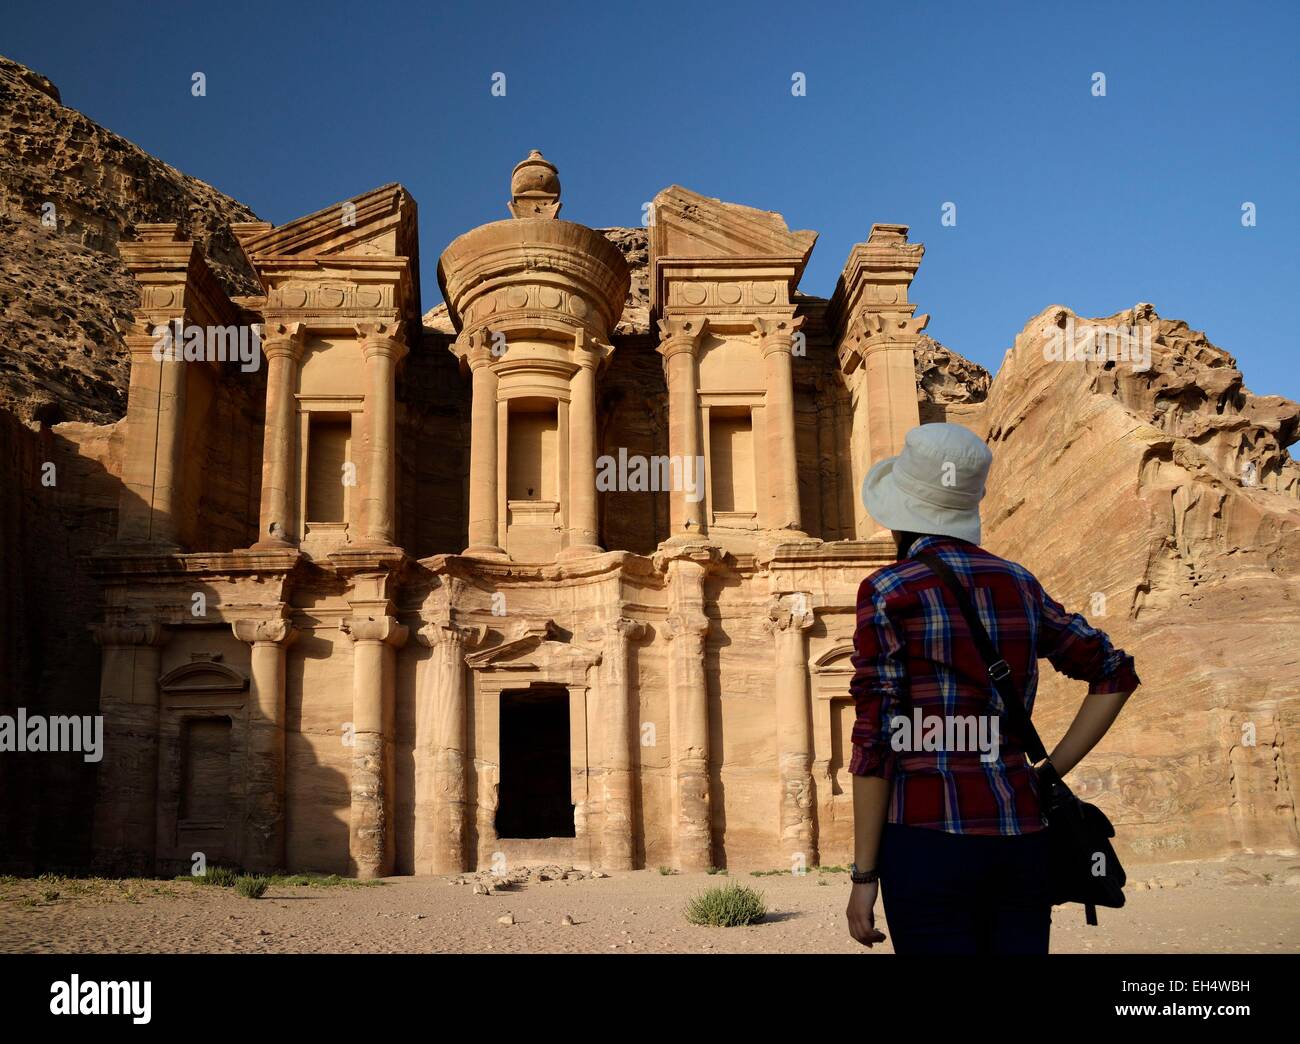 Jordania, Nabataean sitio arqueológico de Petra, catalogado como Patrimonio Mundial por la UNESCO, la silueta de una mujer viendo la famosa y tallados de fachada Al Deir (el monasterio), esculpido en una roca arenisca Foto de stock